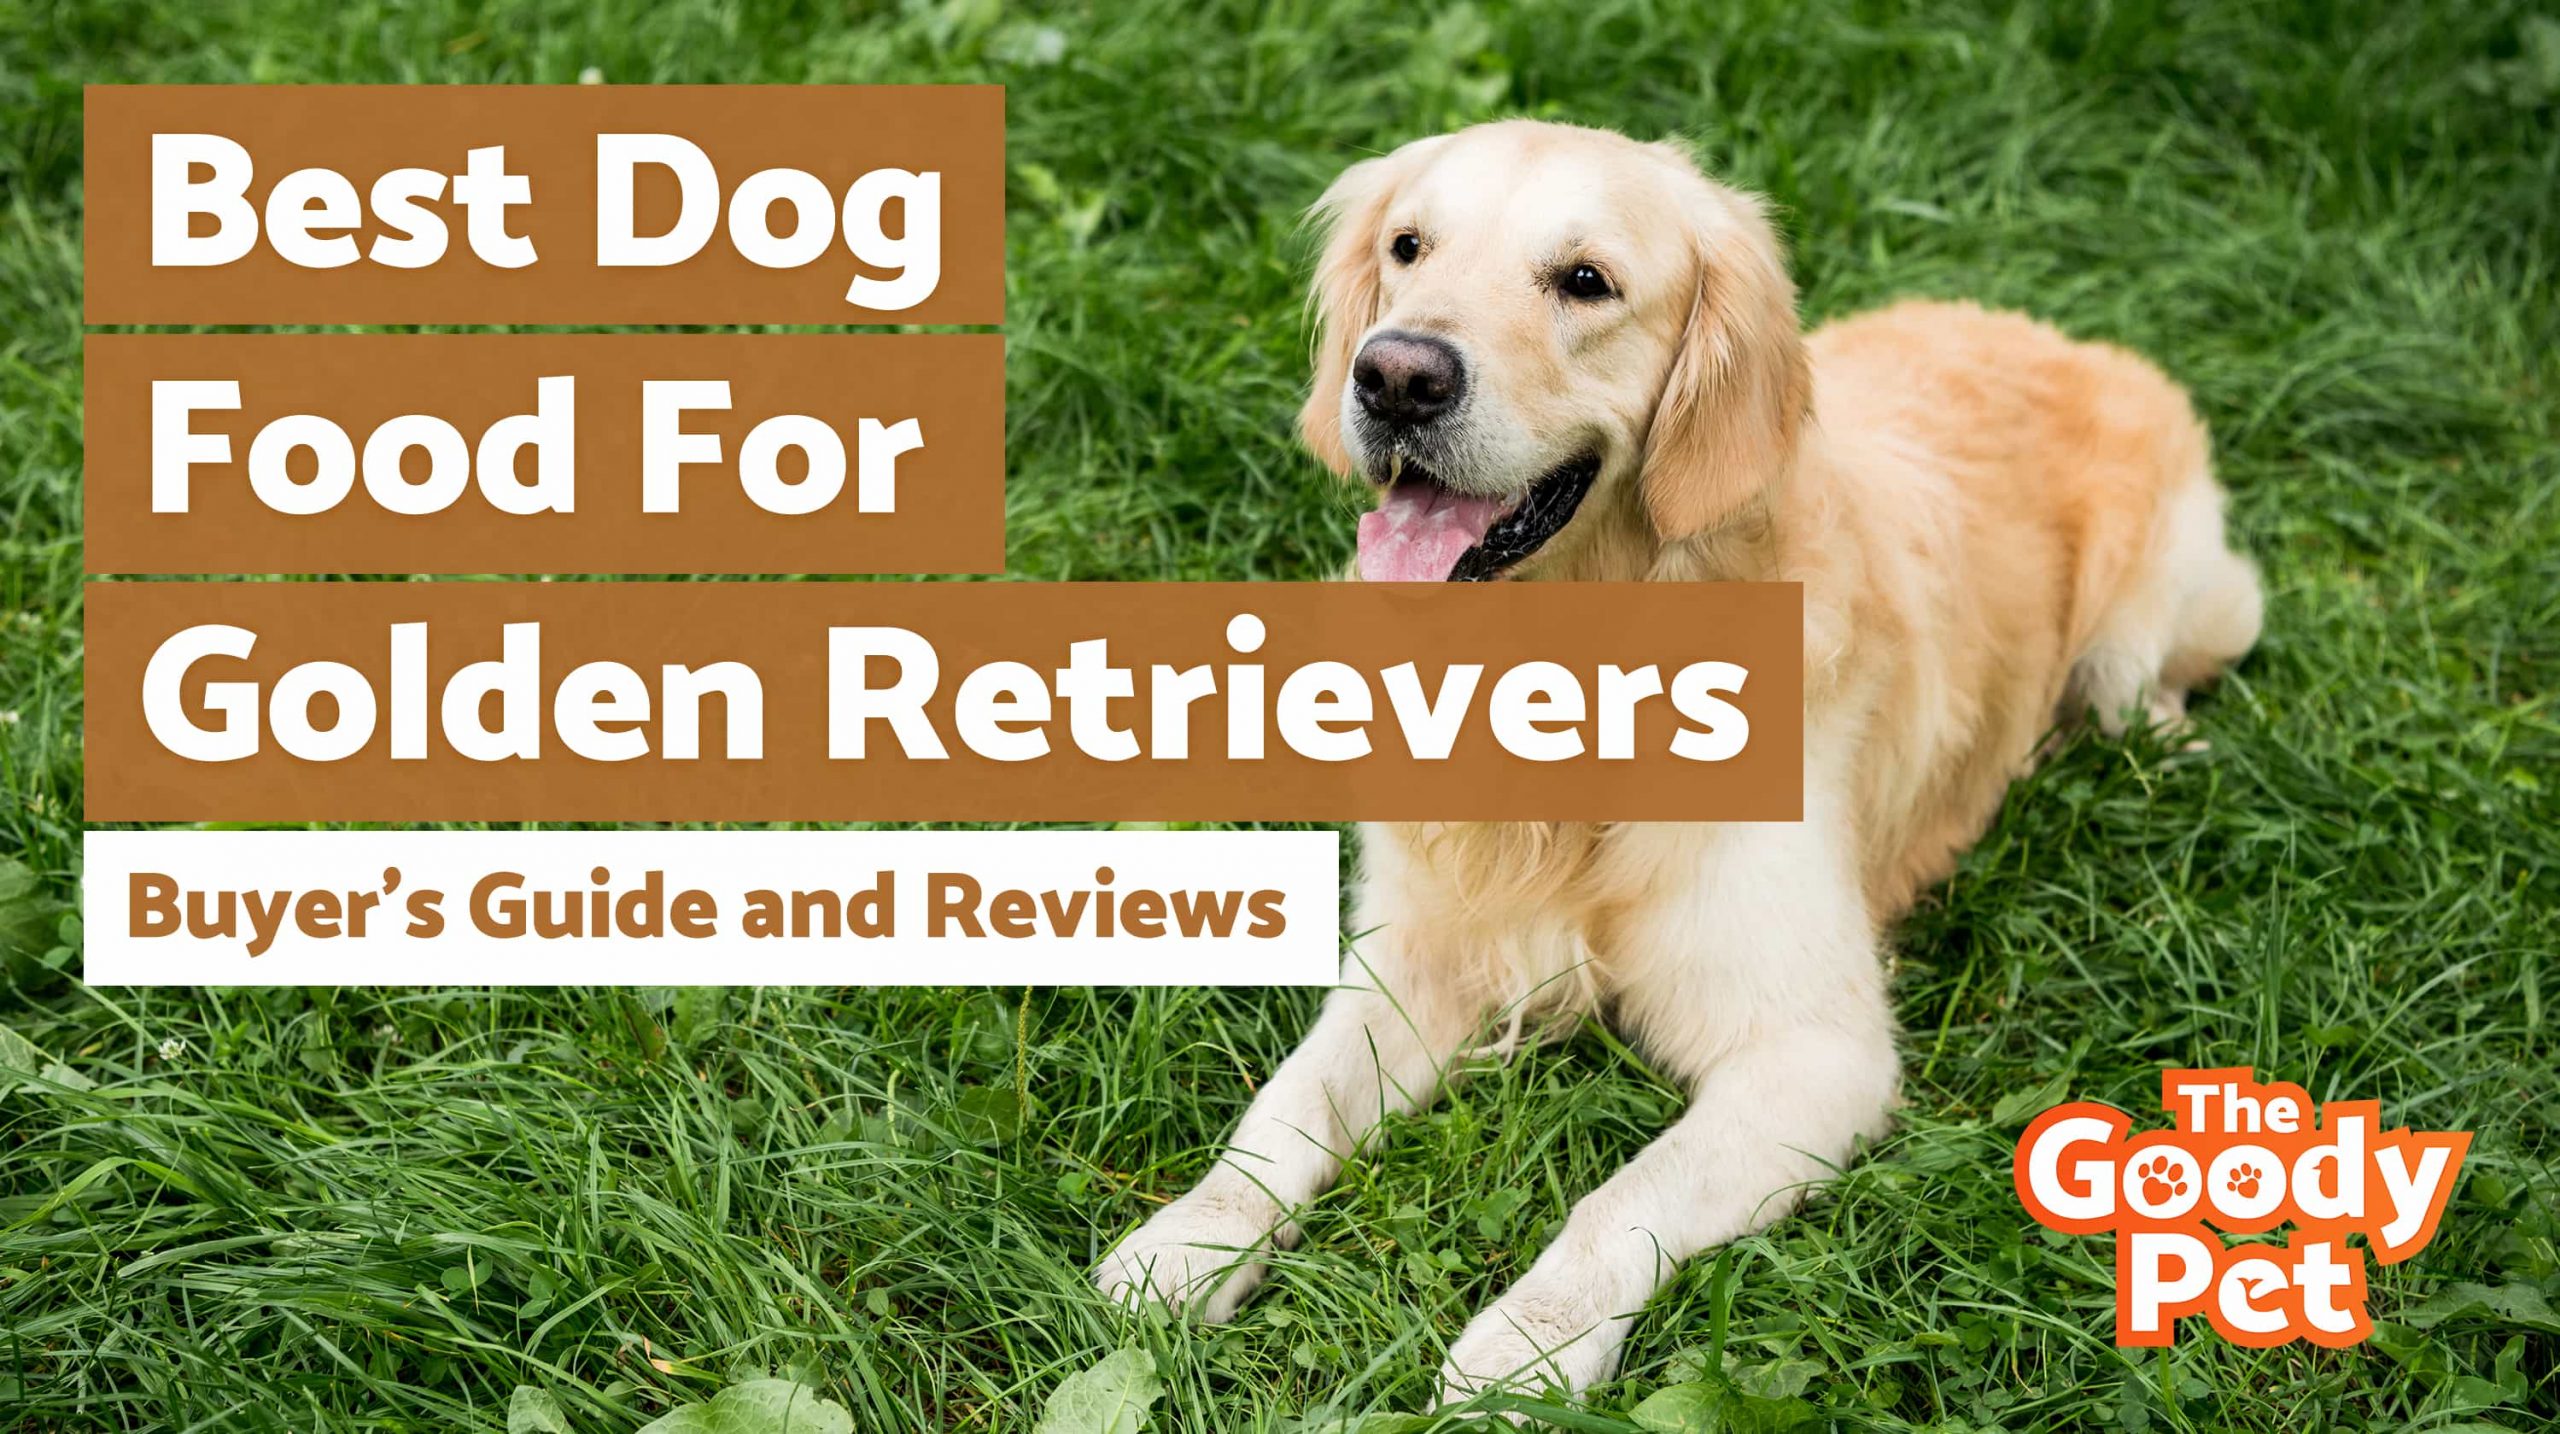 7 Best Dog Foods For Golden Retrievers (February 2020 ...